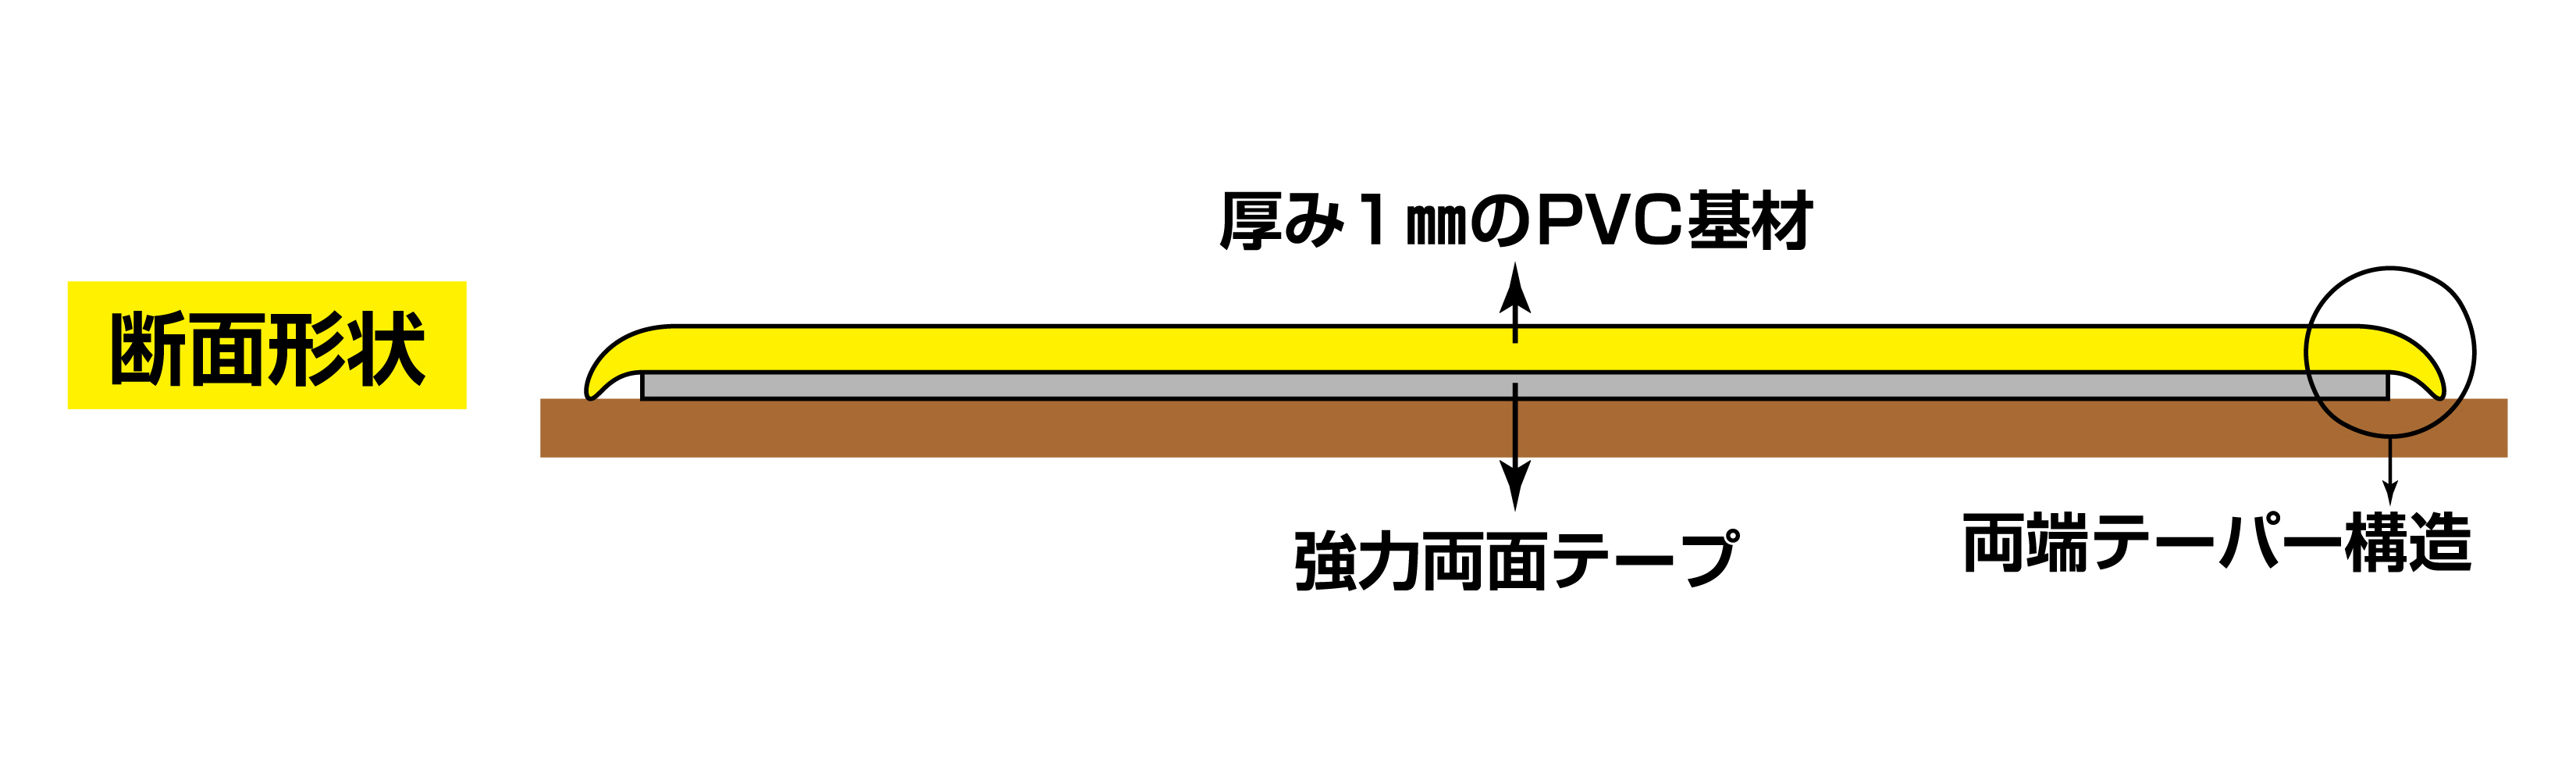 高耐久ラインテープ 403084 JU-1010R,（安全標識・安全用品 日本緑十字社）,の通販 詳細情報,電設資材・電線・ケーブル・安全用品  ネット通販 Watanabe 電設資材 電線 ケーブル ネット 通販 Watanabe